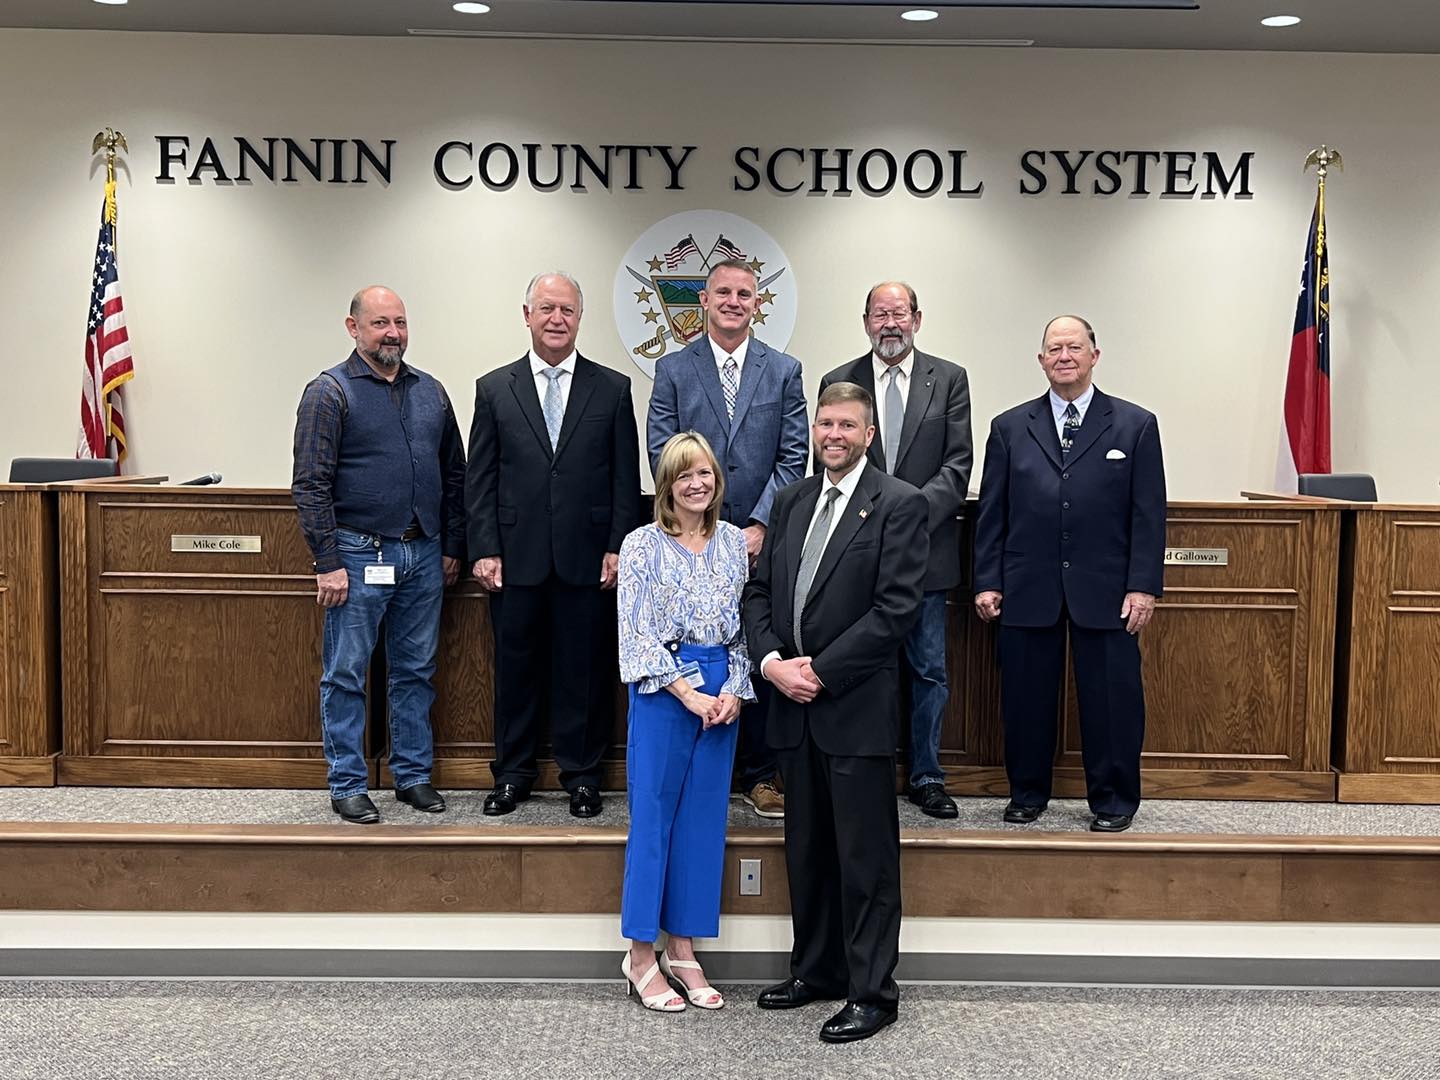 Fannin County School Board